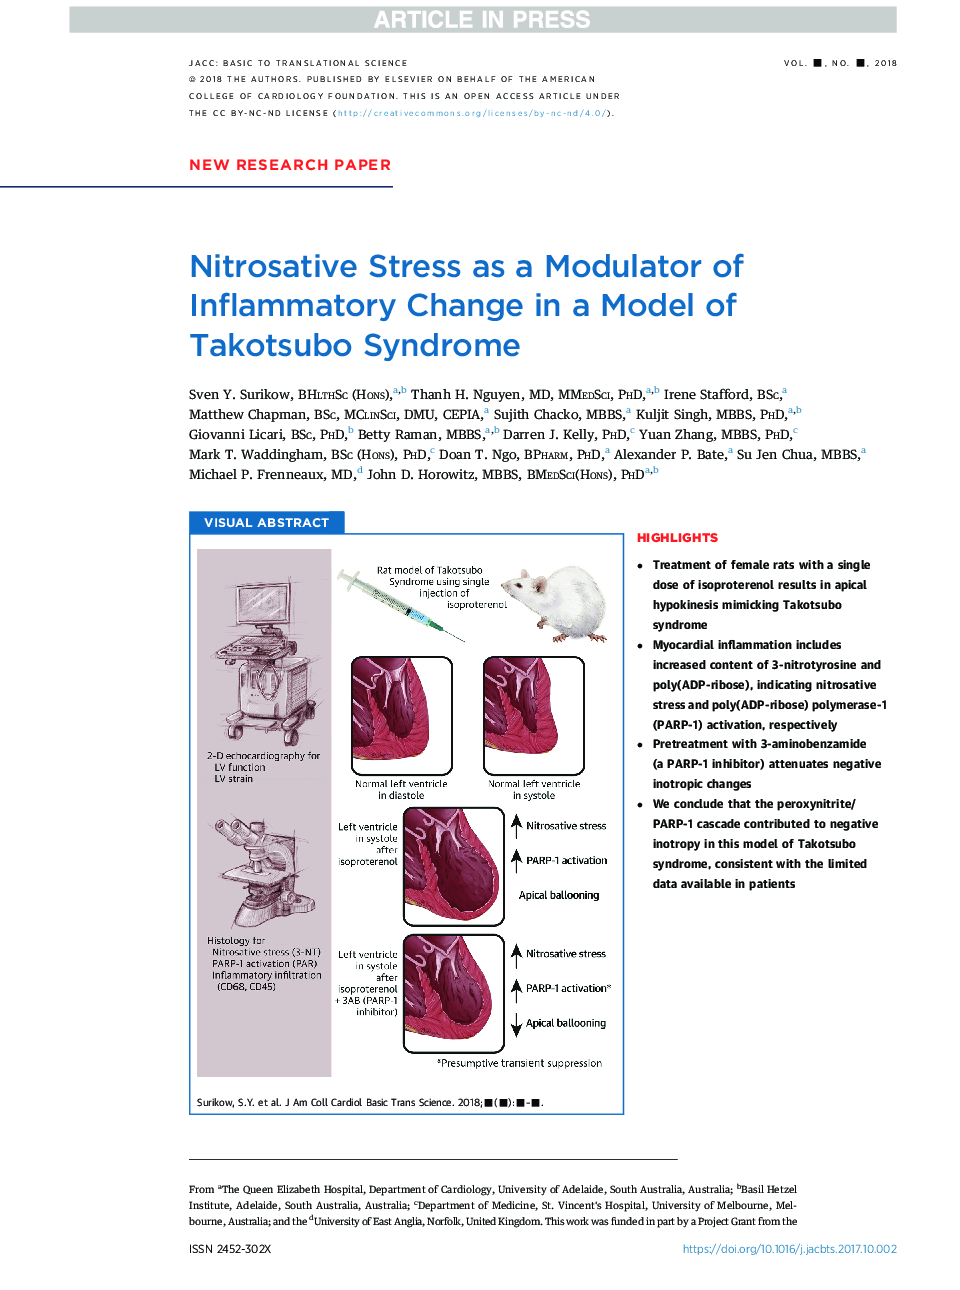 استرس نیتروژنتیک به عنوان یک مدولاتور تغییرات التهابی در یک مدل سندرم تک زبو 